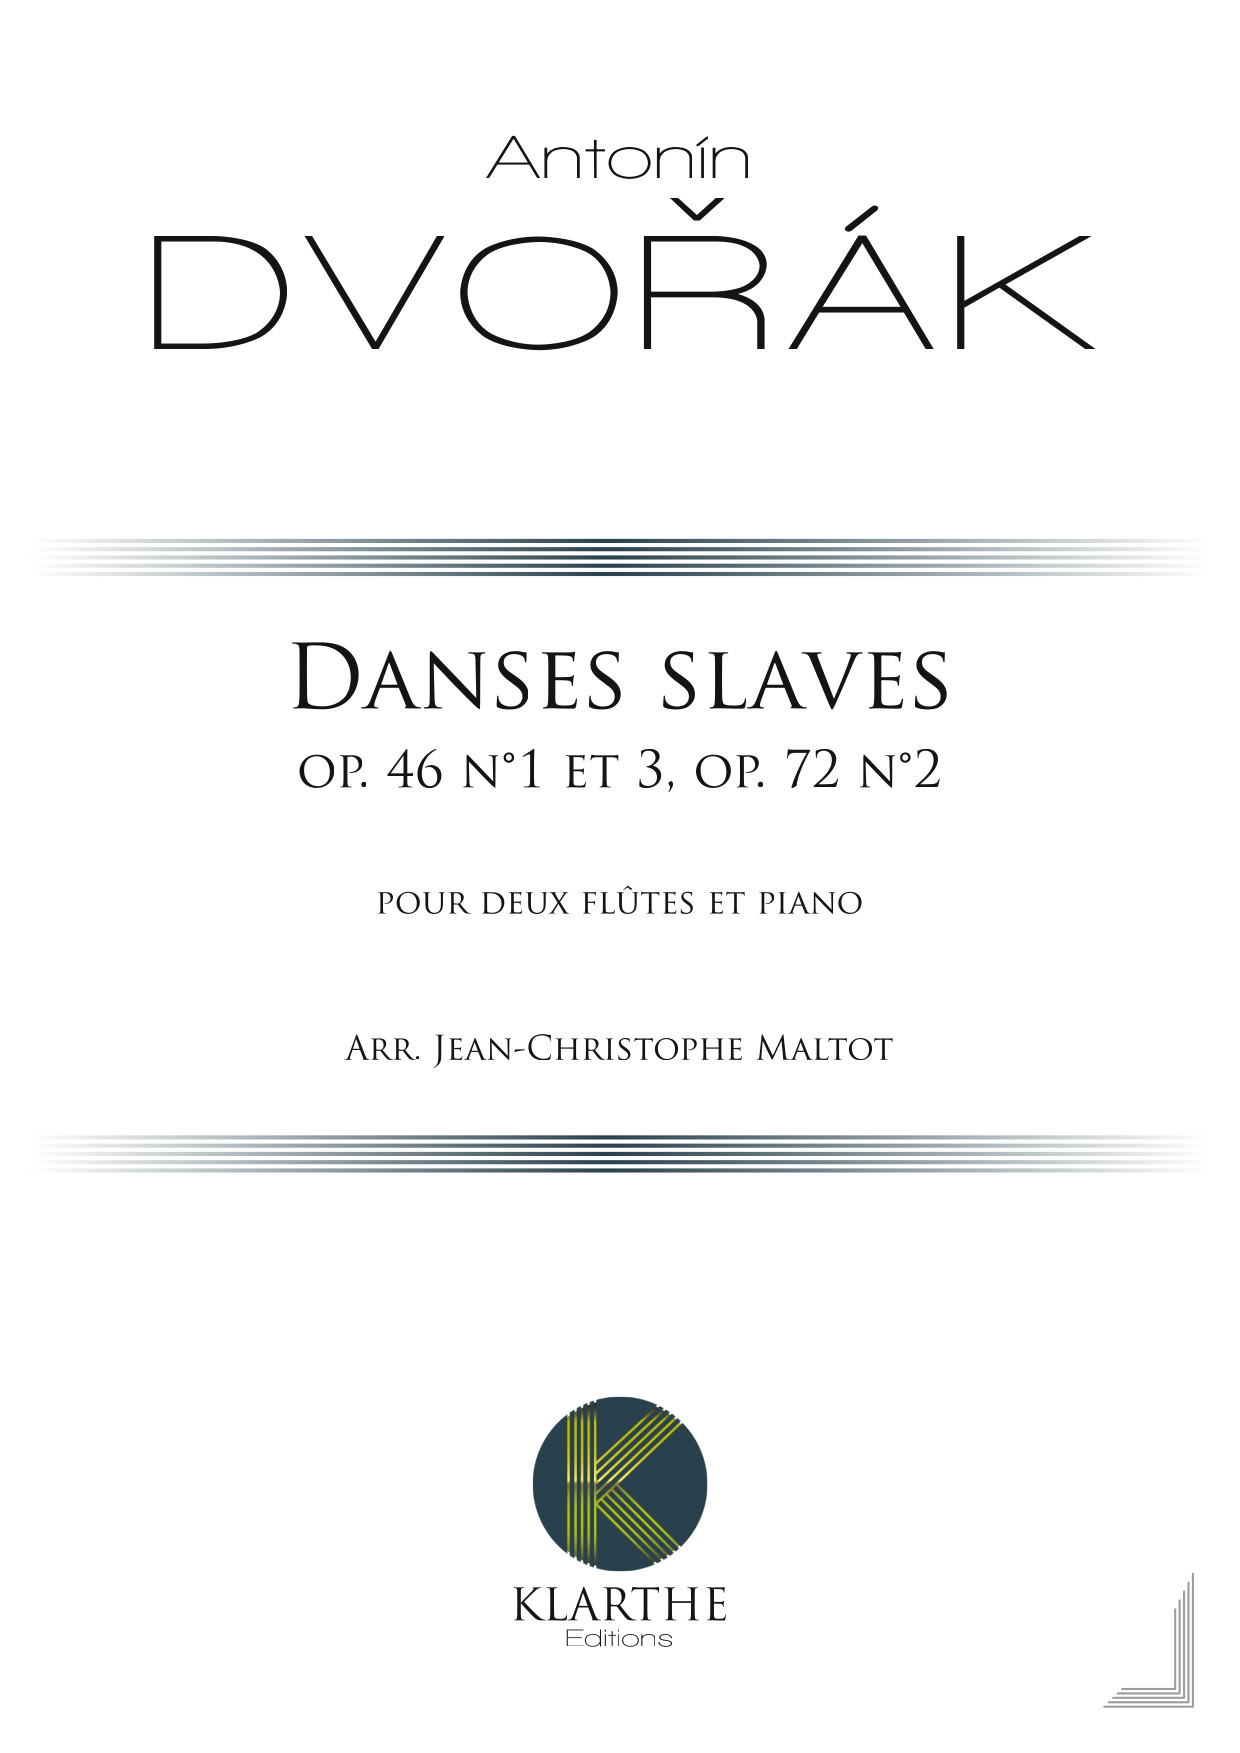 Danses slaves op. 46 n1 et 3, op. 72 n2 (DVORAK ANTONIN)